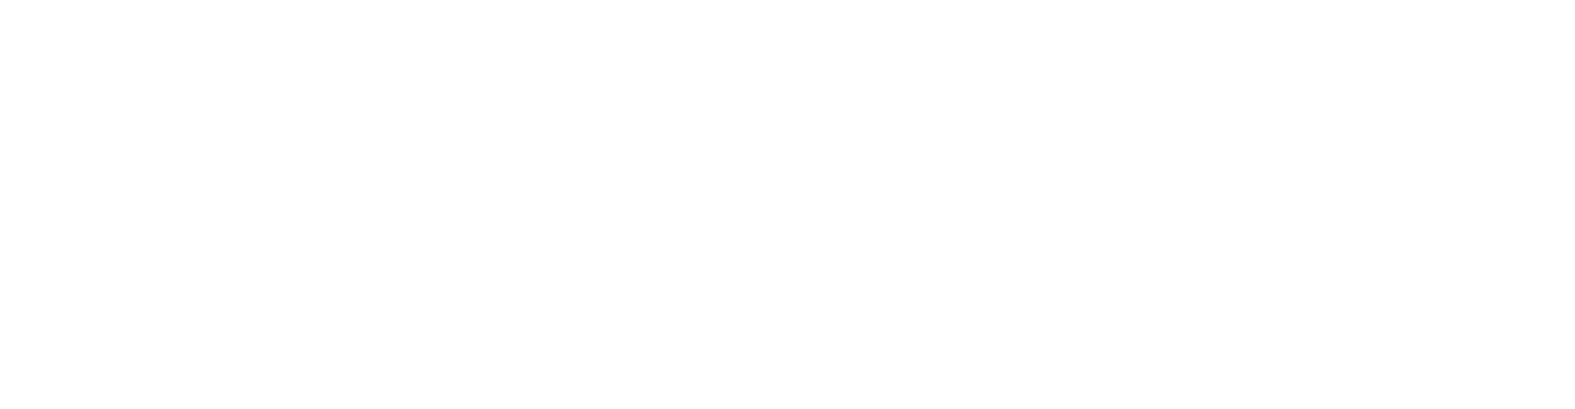 Montea Comm logo pour fonds sombres (PNG transparent)